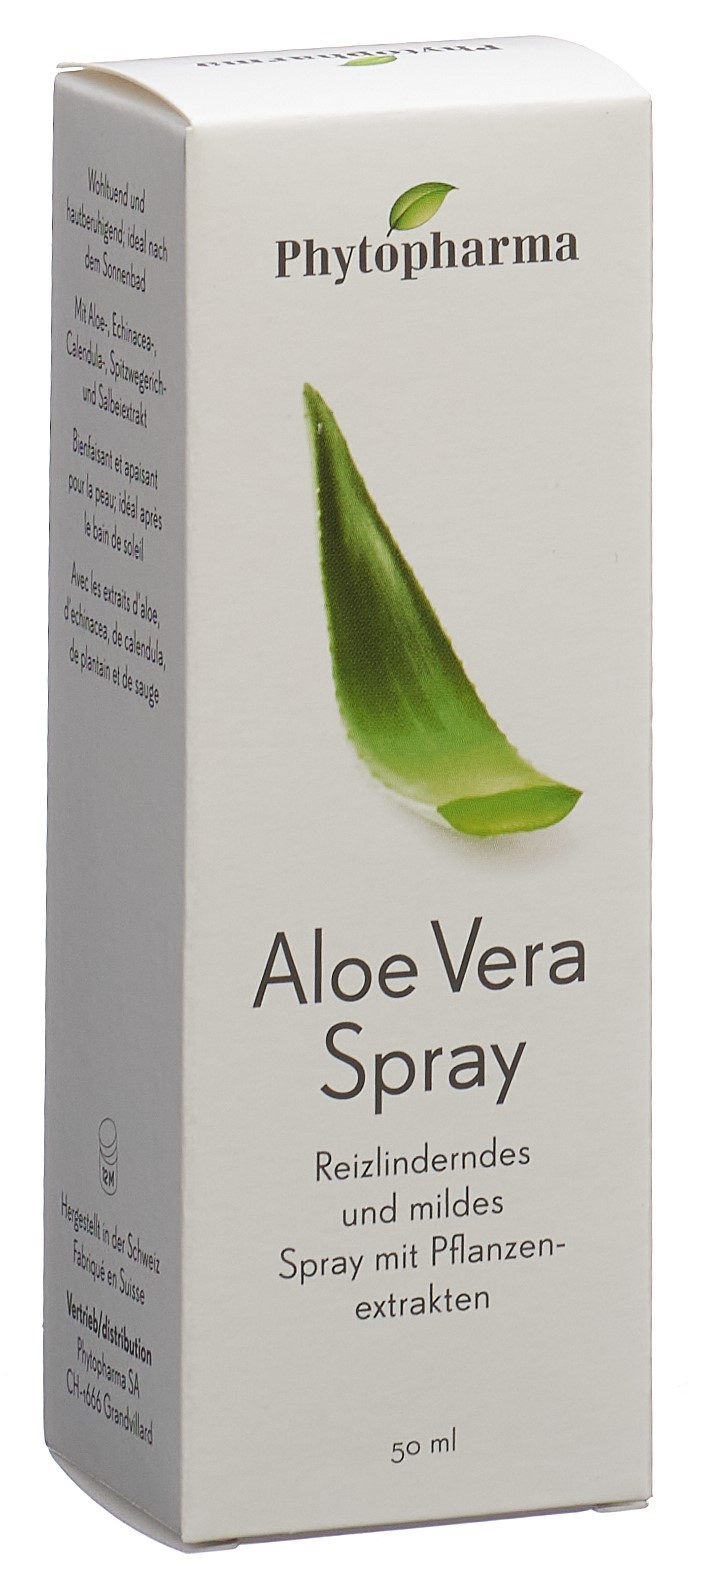 PHYTOPHARMA Aloe Vera Spr 50 ml